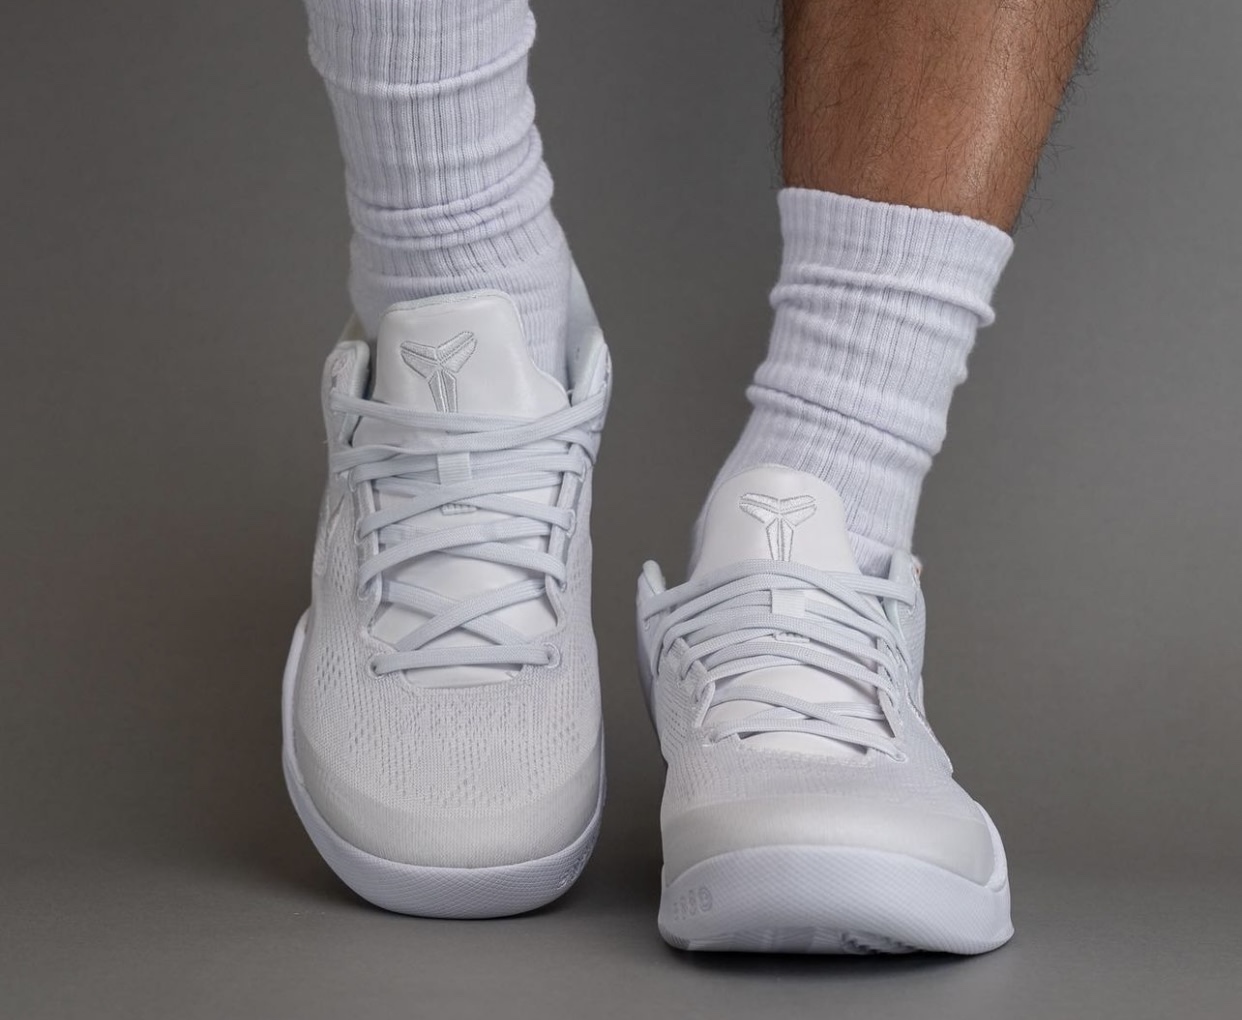 Nike Kobe 8 Protro Triple White FJ9364 100 On Feet 6